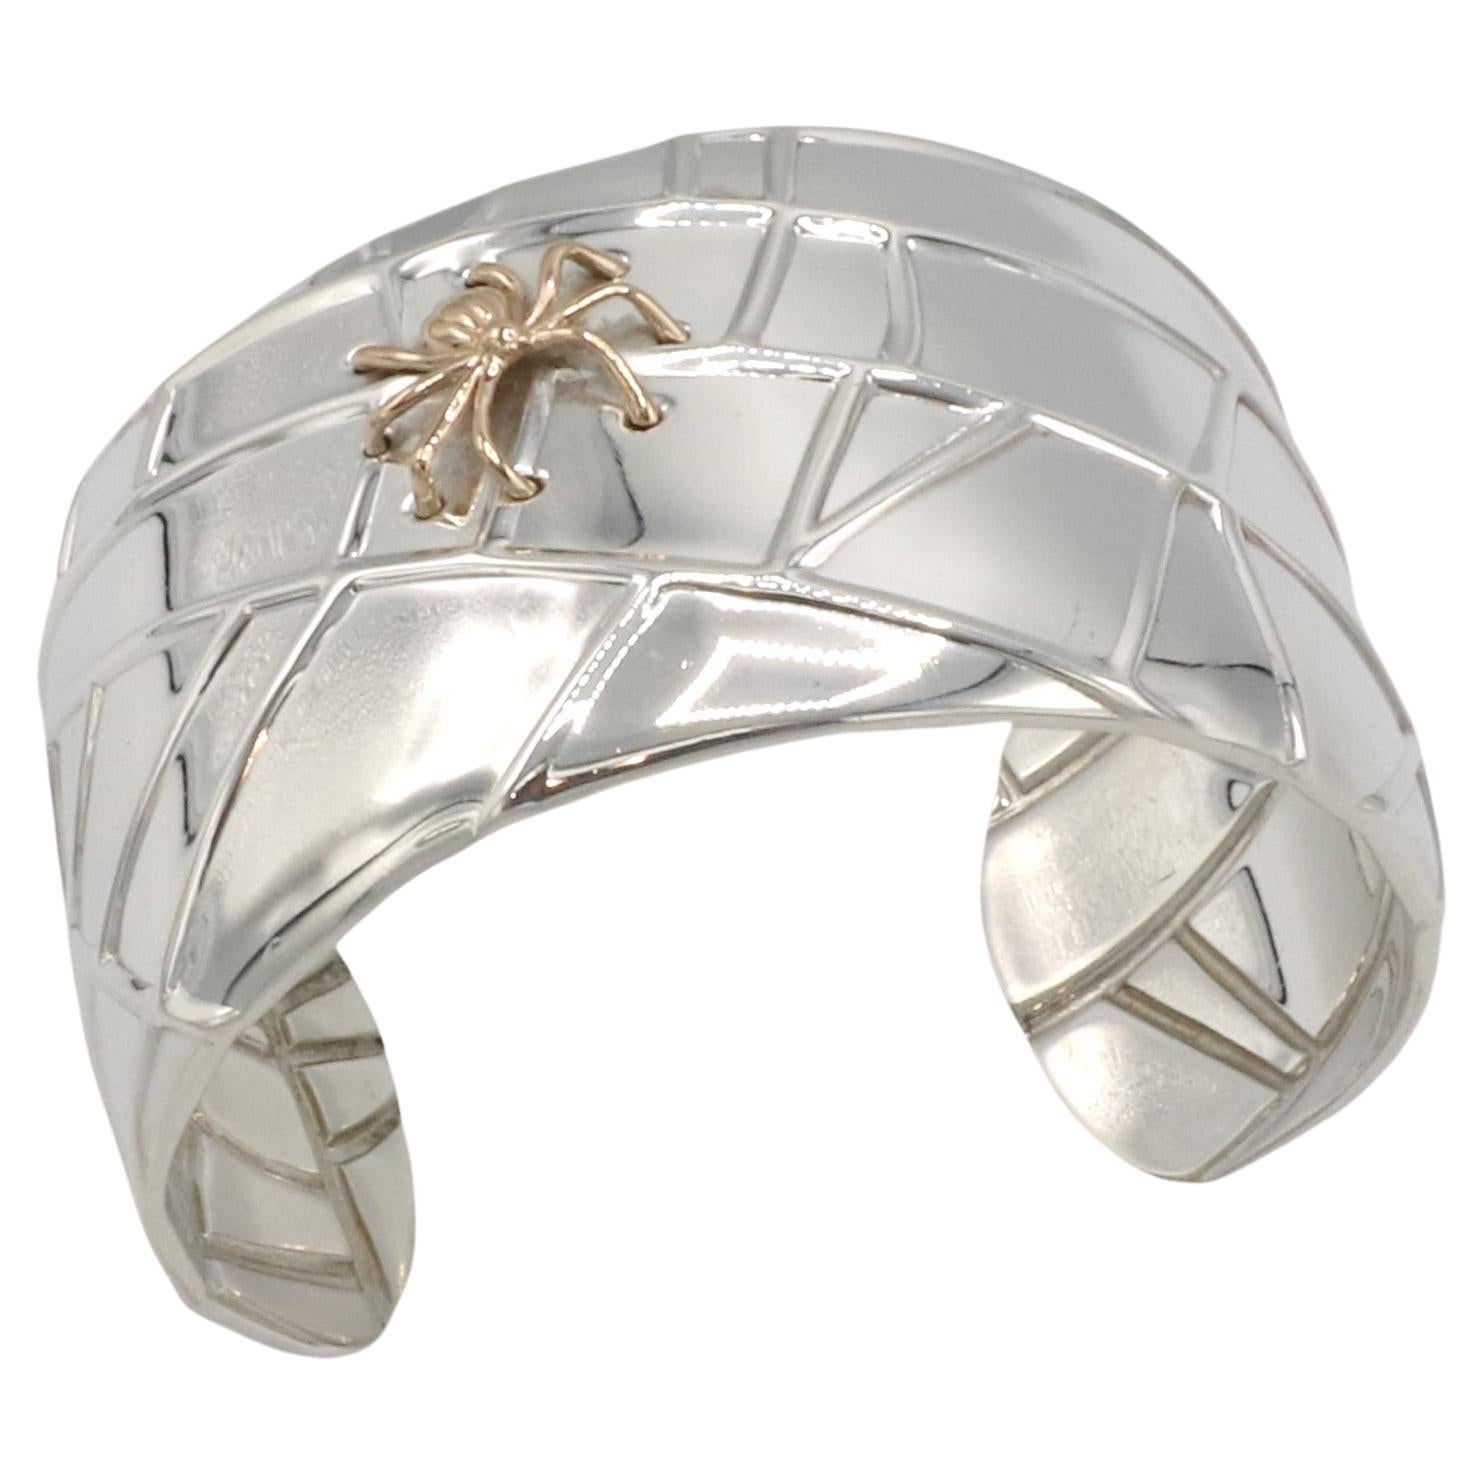 Tiffany & Co. Manschettenarmband aus Sterling Silber & Gold Spinnen 
Metall: Sterling Silber, 18k Gold
Gewicht: 92,07 Gramm
Breite: 38 mm
Durchmesser: 60 mm
Umfang: Ca. 7 Zoll